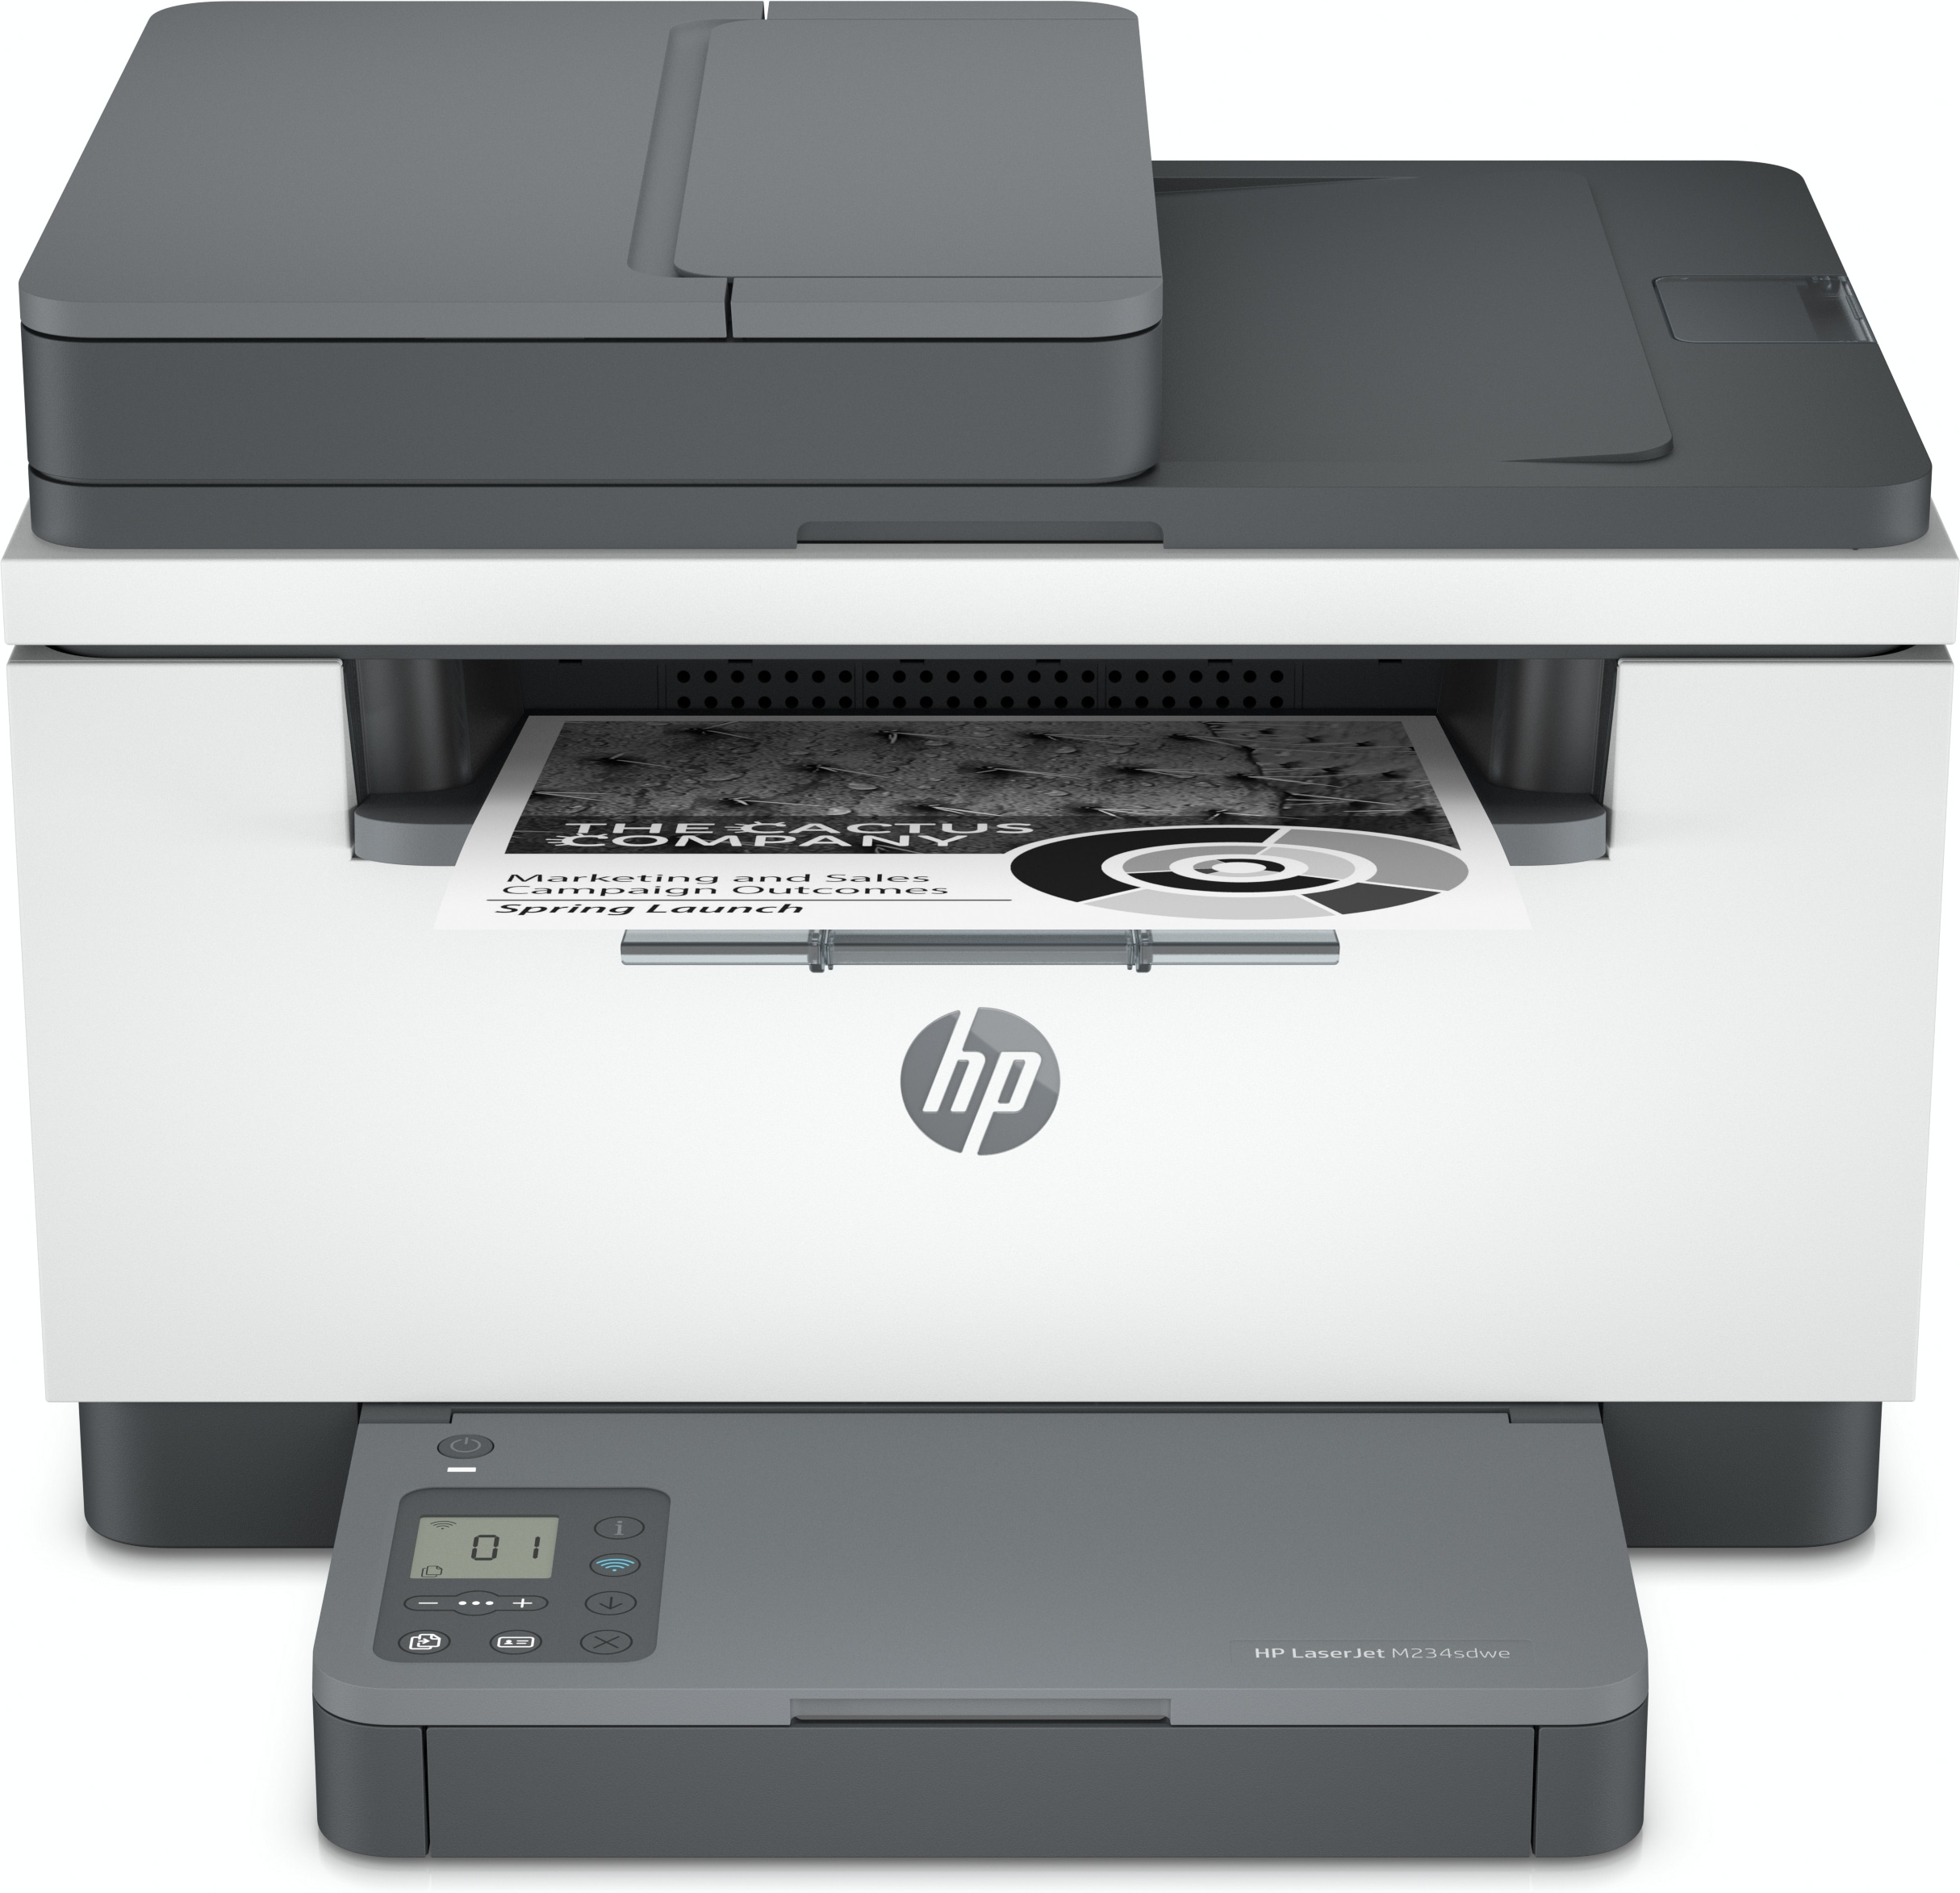 cijfer Doornen lof HP LaserJet HP LaserJet MFP M234sdwe printer, Zwart-wit, Printer voor Thuis  en thuiskantoor, Printen, kopiëren, scannen, HP+; Scannen naar e-mail;  Scannen naar pdf (6GX01E#B19) kopen » Centralpoint